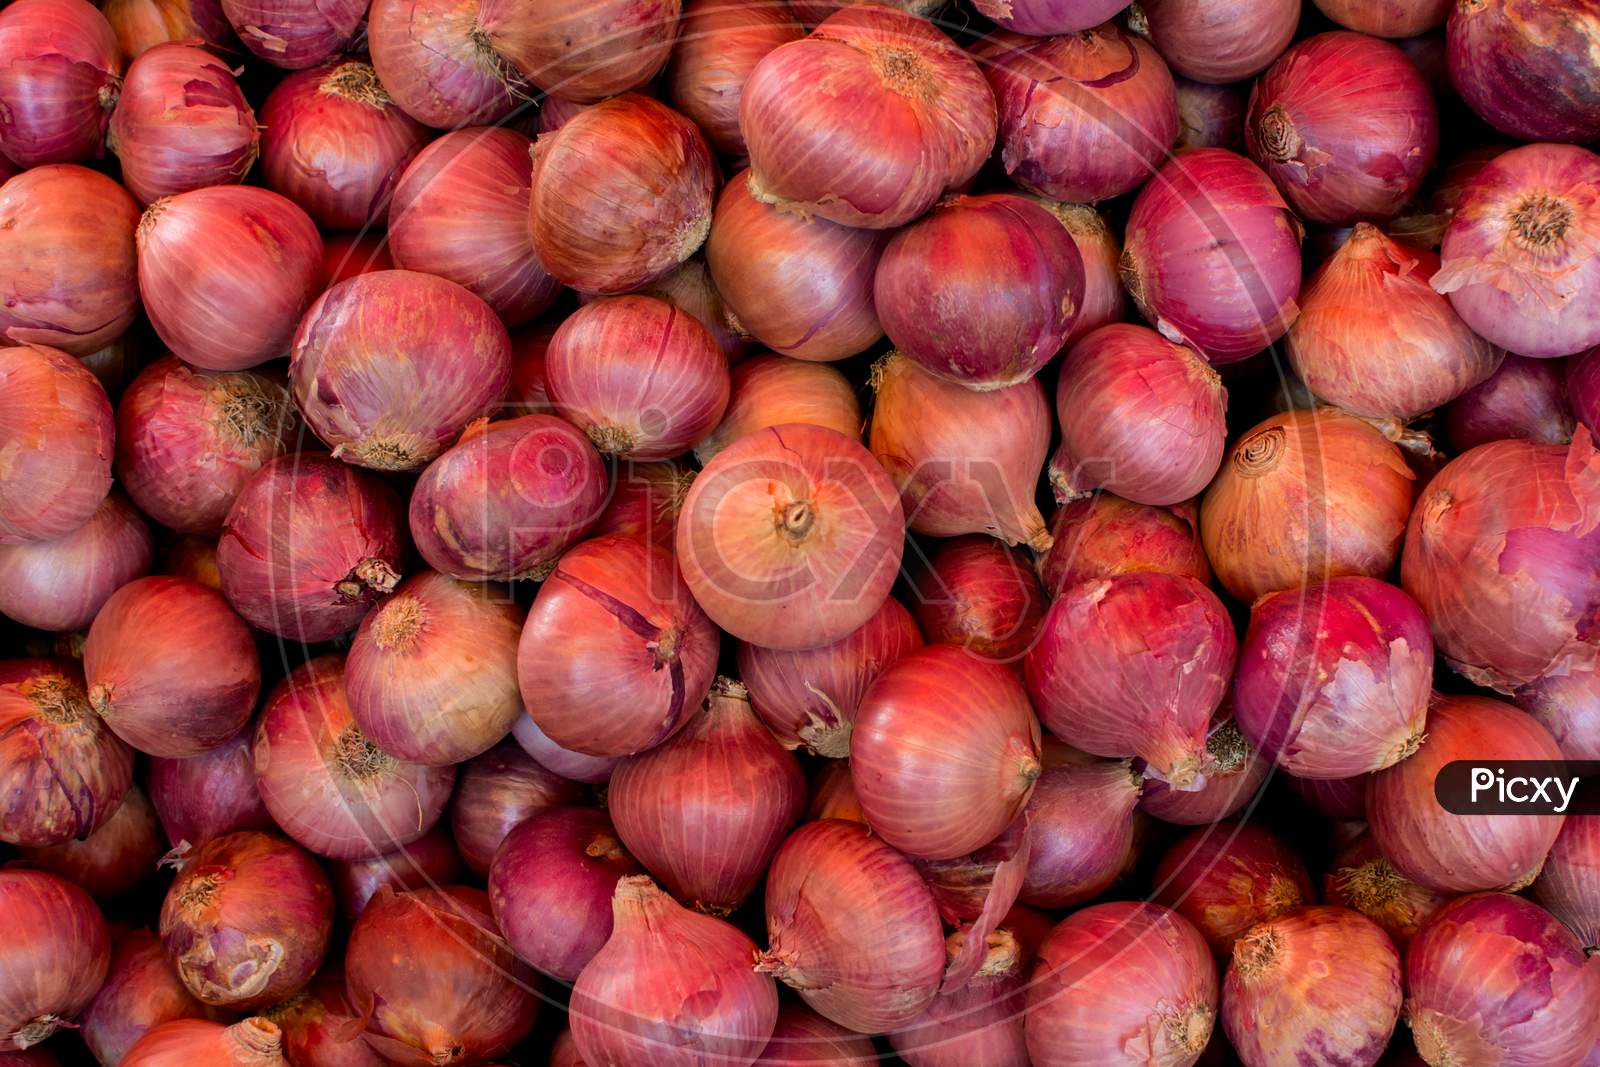 Onion heap in a market for sale